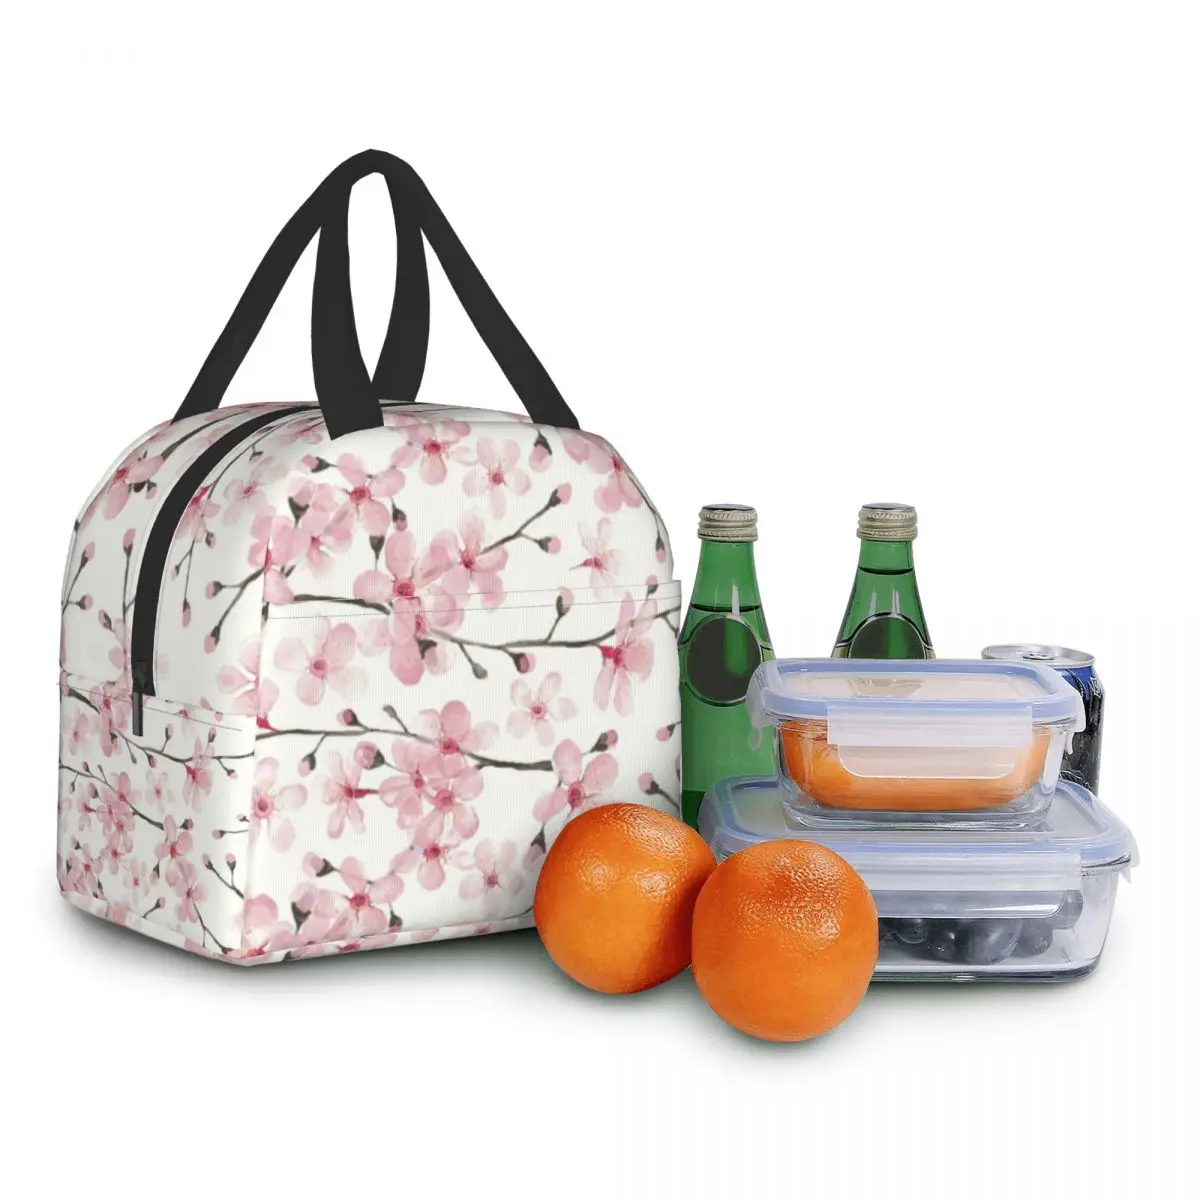 Японская вишневая изолированная сумка для ланча с цветочным рисунком, Многоразовый холодильник, термос для еды, Ланч-бокс для работы, учебы и путешествий Изображение 5